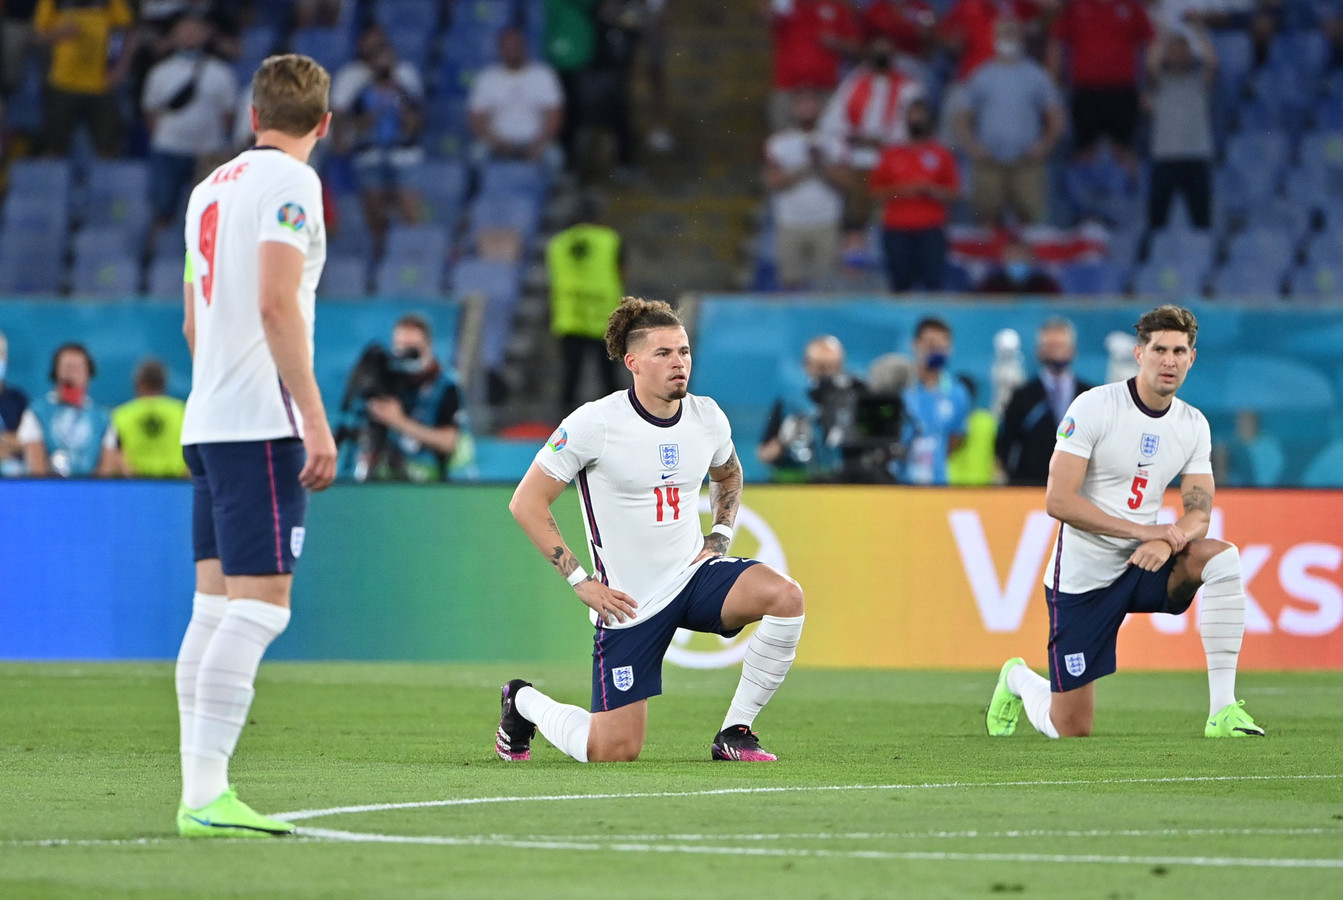 Een vertrouwd beeld: Engelse spelers die knielen voor de aftrap van een wedstrijd.